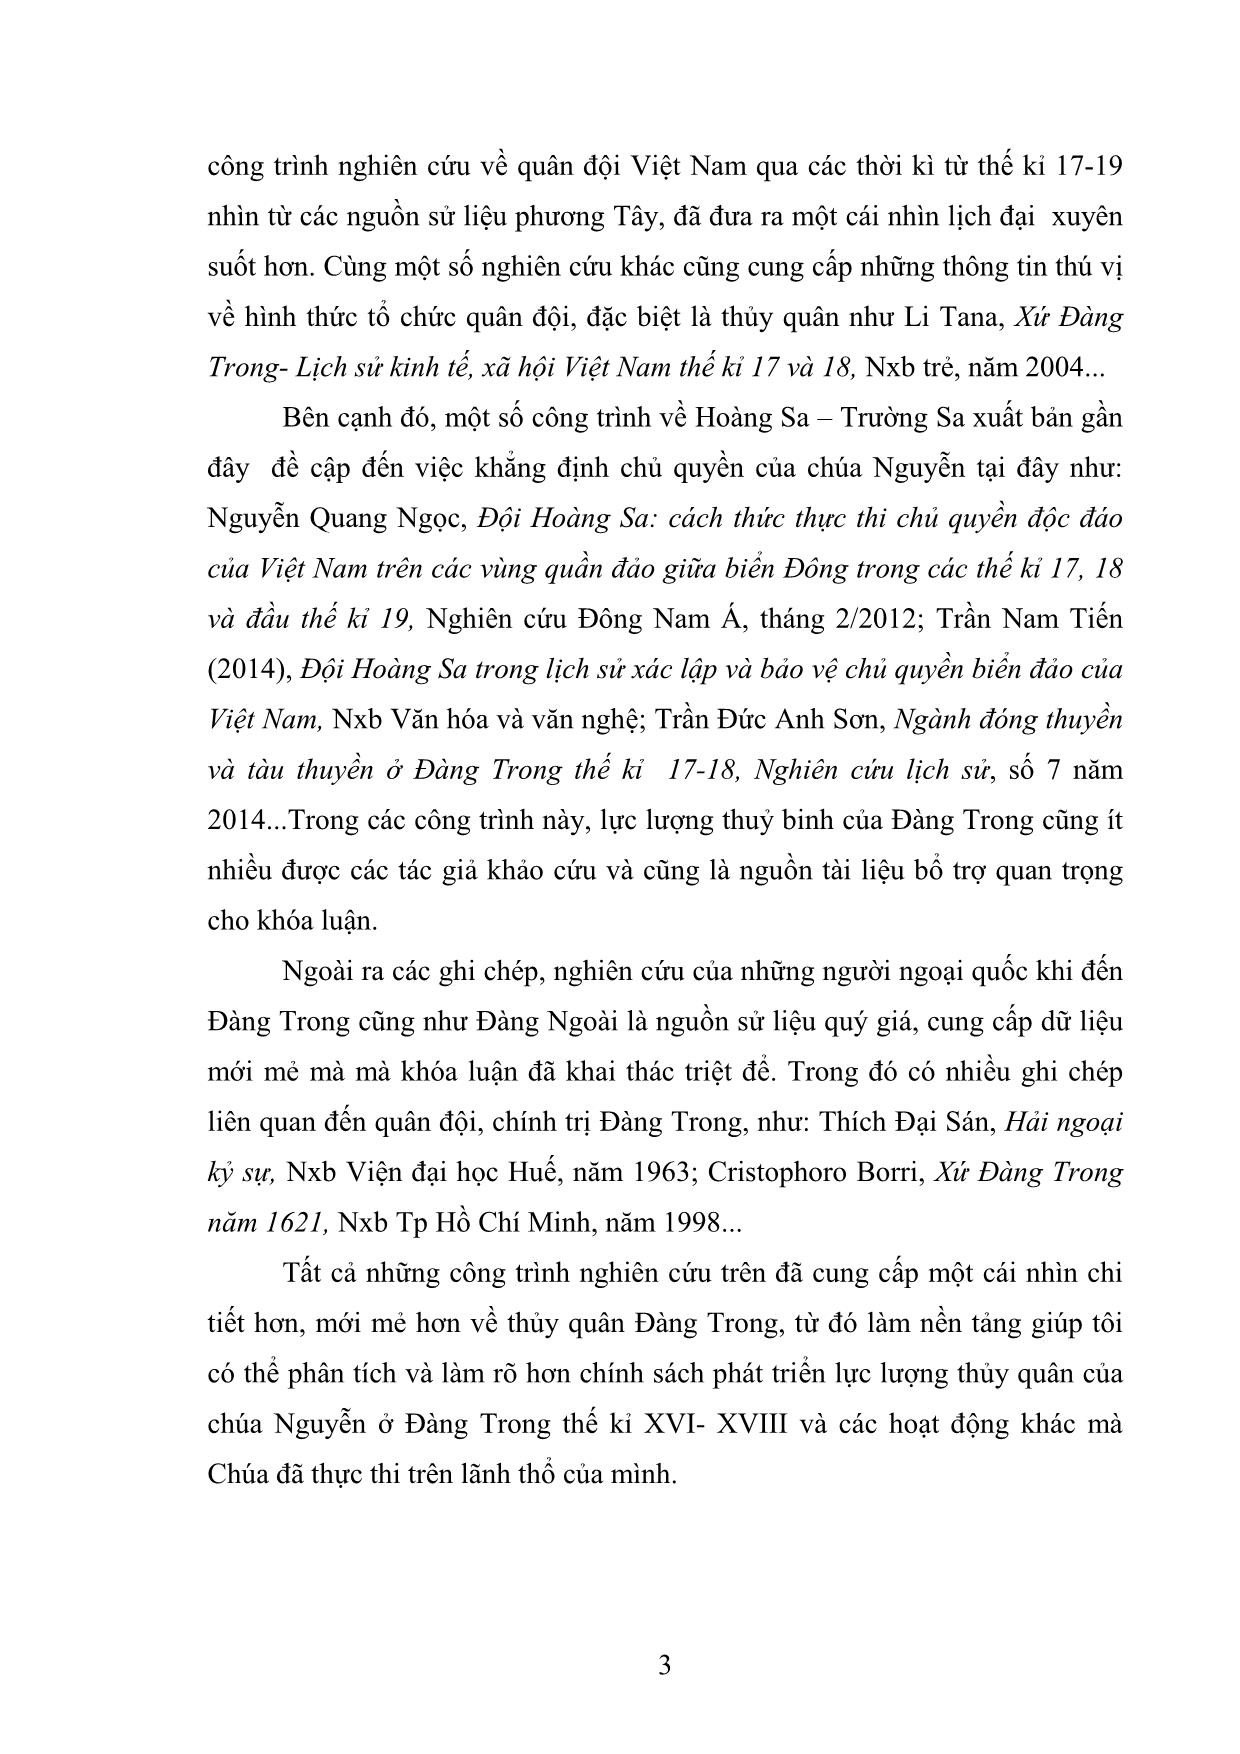 Khóa luận Chính sách phát triển thủy quân của các chúa Nguyễn ở Đàng Trong thế kỉ XVI-XVIII trang 7